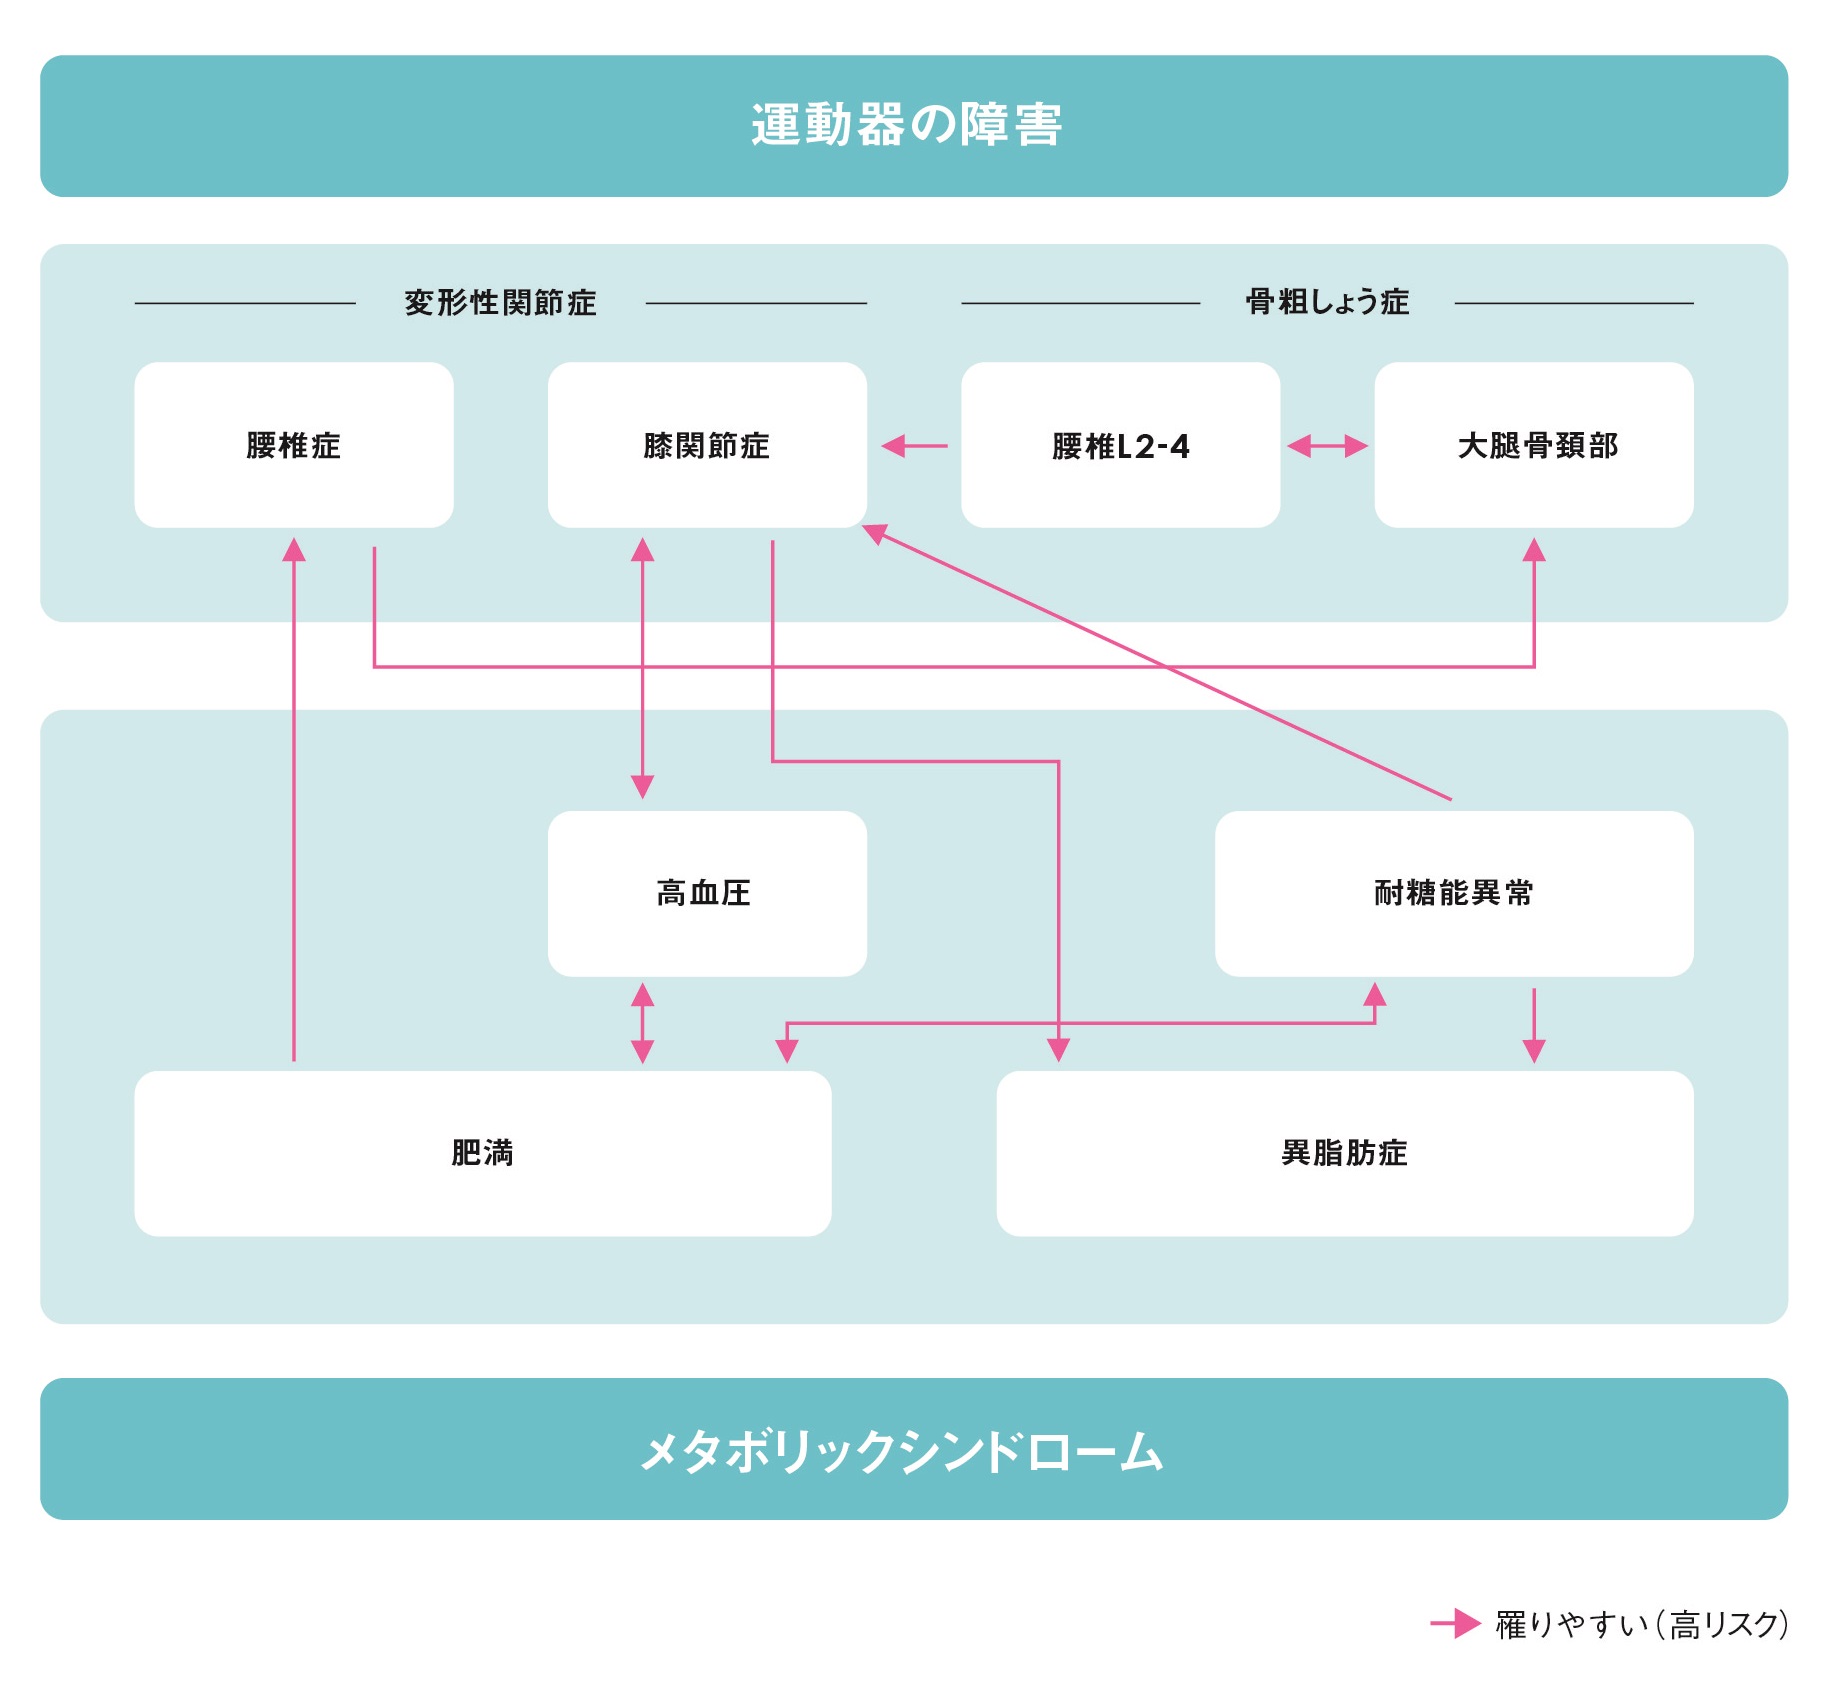 図3：運動器の障害とメタボリックシンドロームとの関連を示す概念図。矢印が結ぶ2つの疾患や症状には、一方を有していると他方が発生しやすくなるという関係がある。さまざまな要因が複雑に絡み合って、互いの疾病を誘発し合っている。（Yoshimura N, et al: Mod Rheumatol. 2014 Nov 20:1-11. [Epub ahead of print] より）